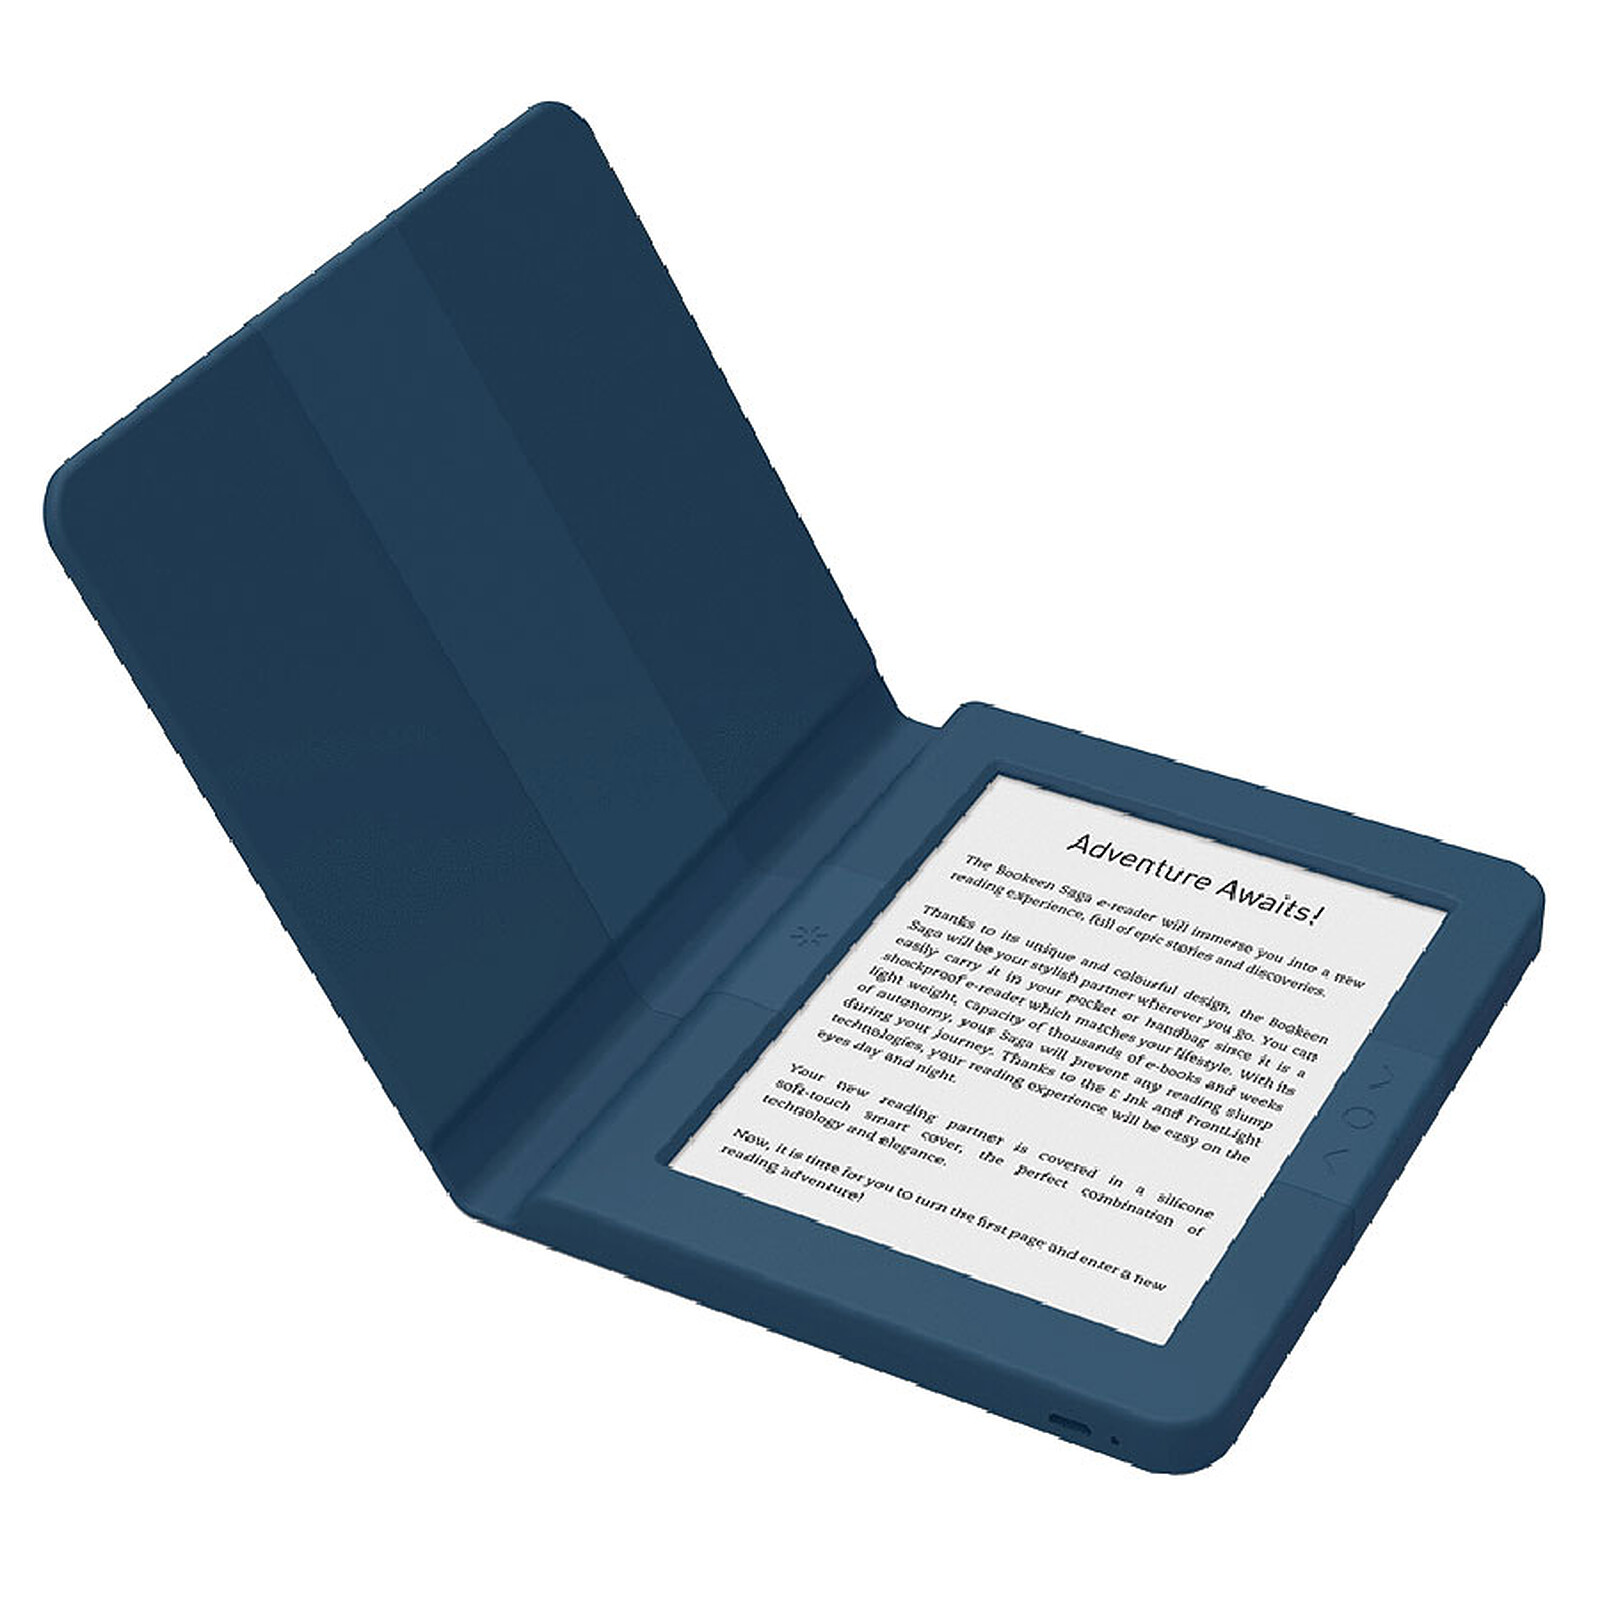 Kindle Paperwhite : profitez de cette offre limitée à -32 % sur la star des  liseuses électroniques